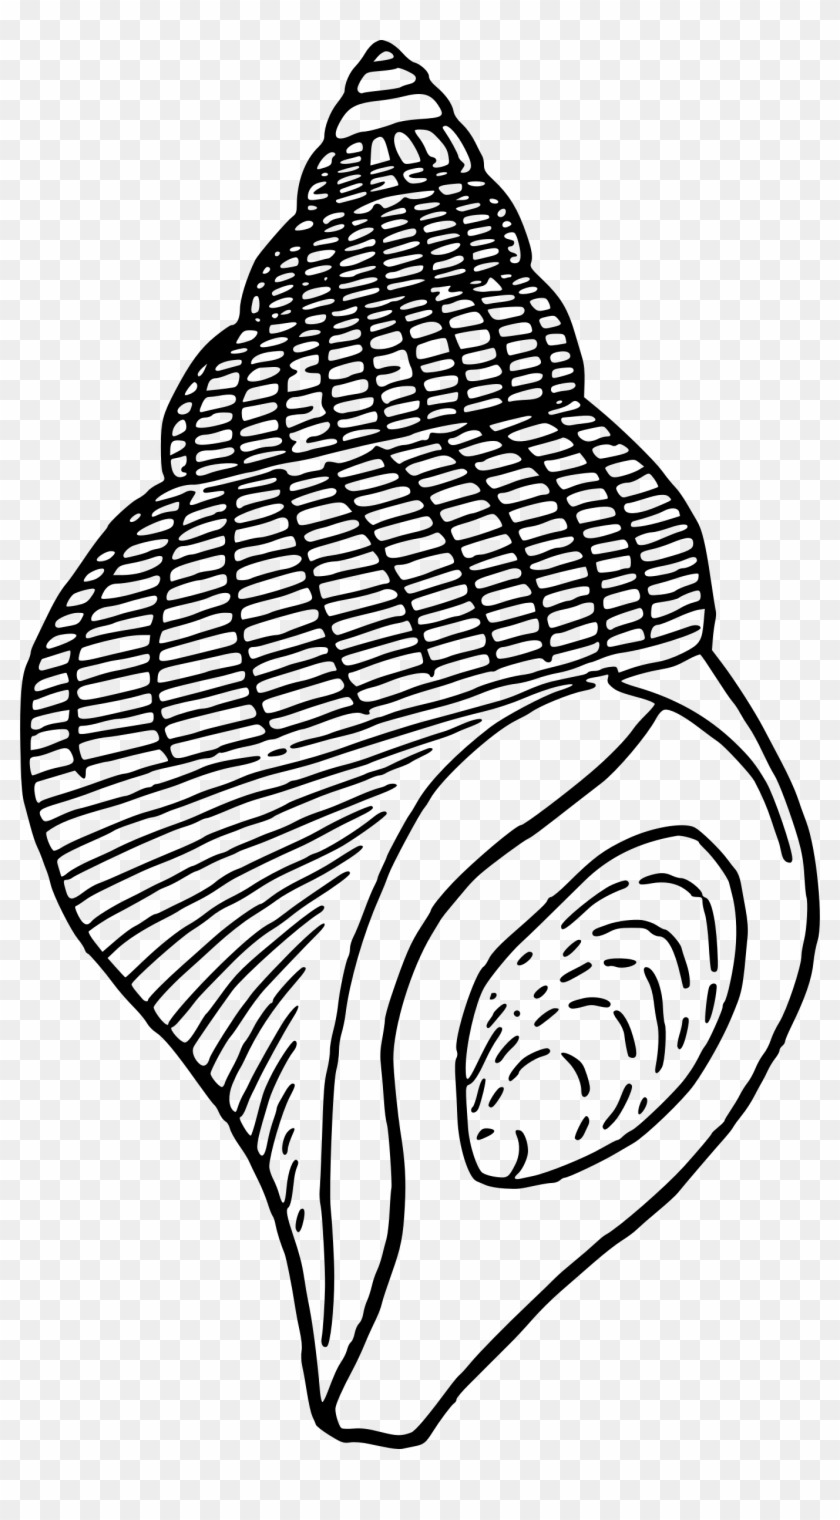 Seashell 1 - Seashell Clip Art #420597